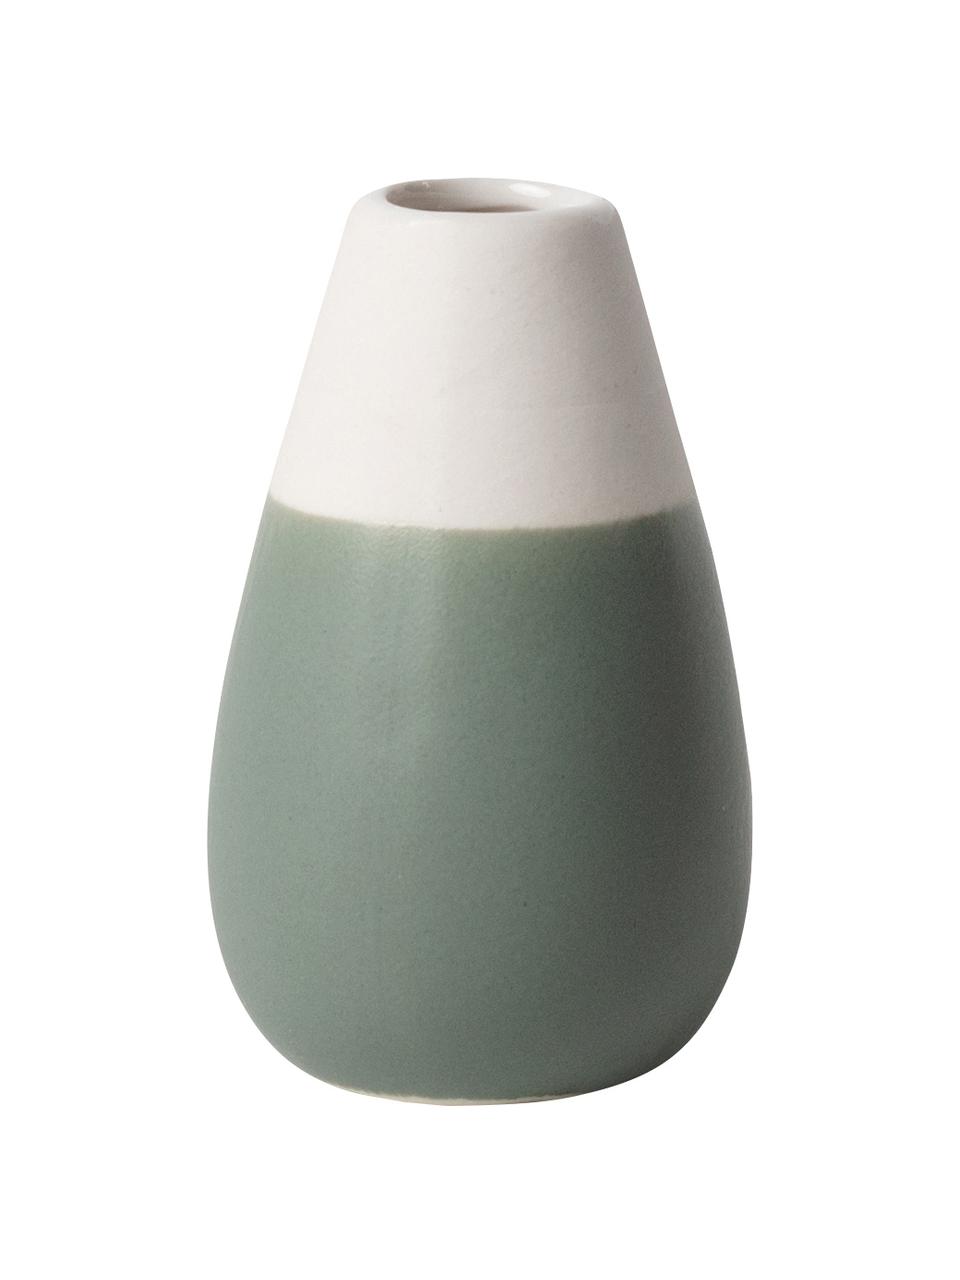 XS-Vasen-Set Pastell aus Steingut, 4-tlg., Steingut mit Glasur, Grüntöne, Weiß, Sondergrößen